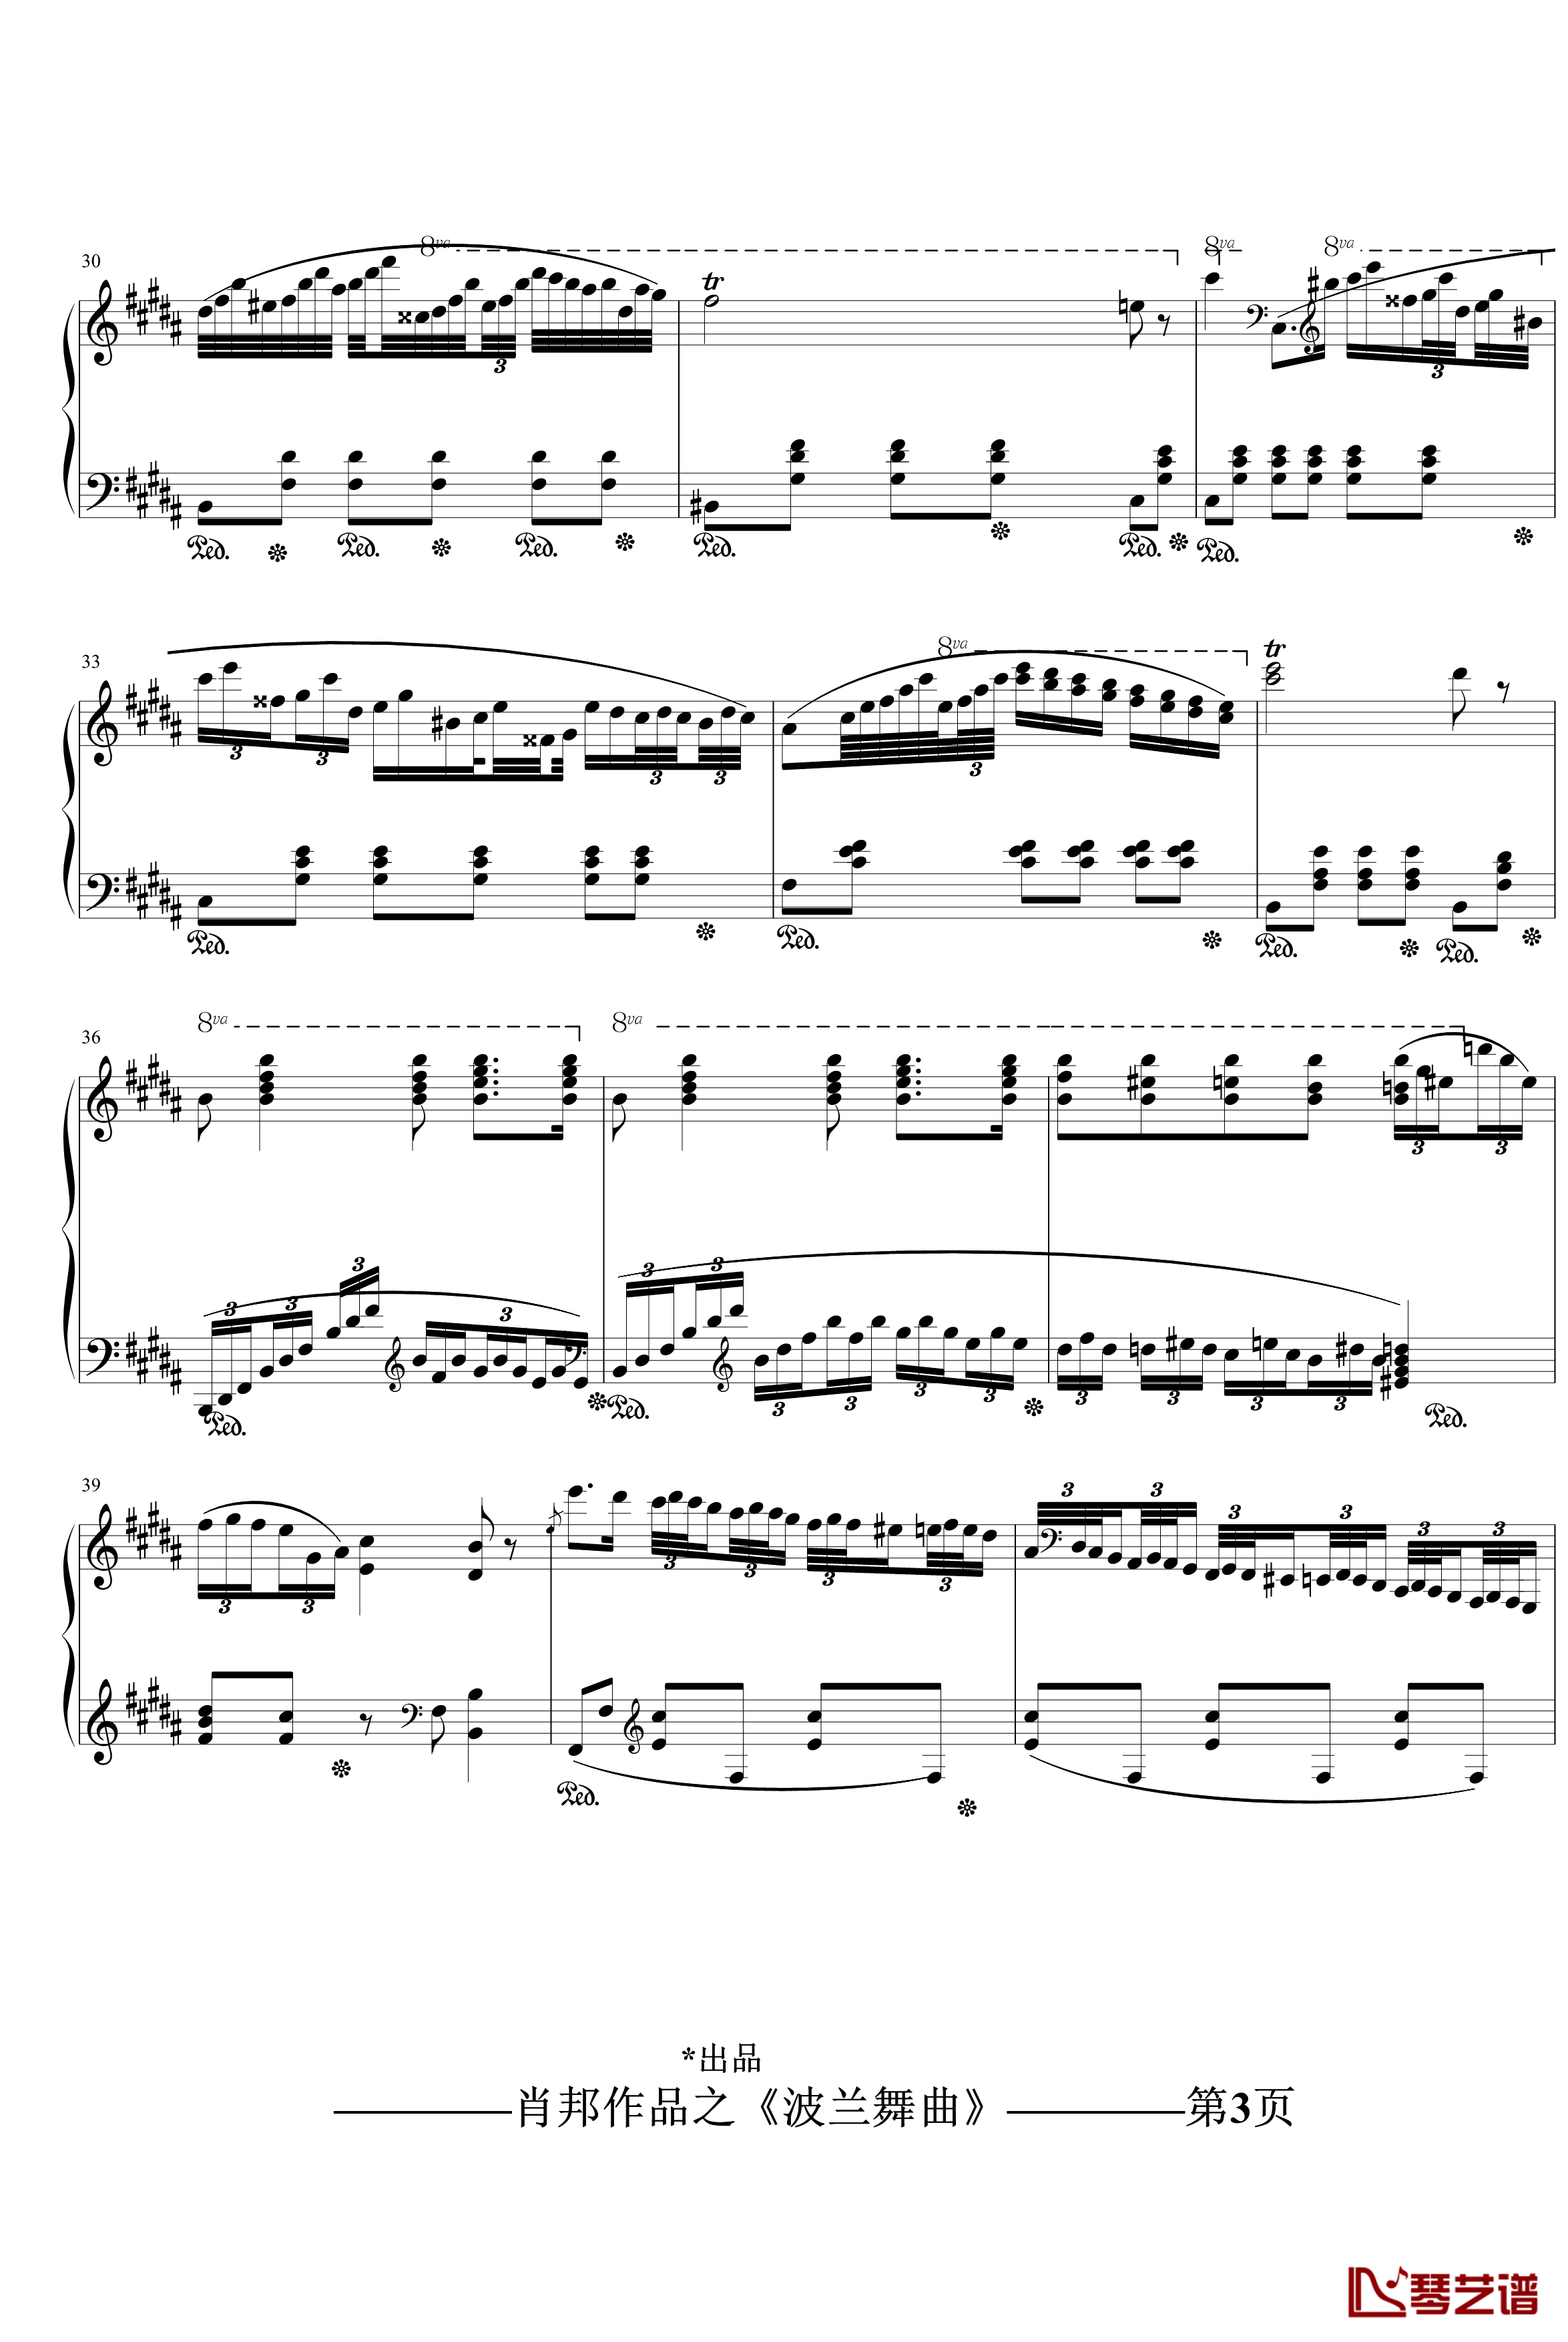 波兰舞曲钢琴谱-再制作-肖邦-chopin3